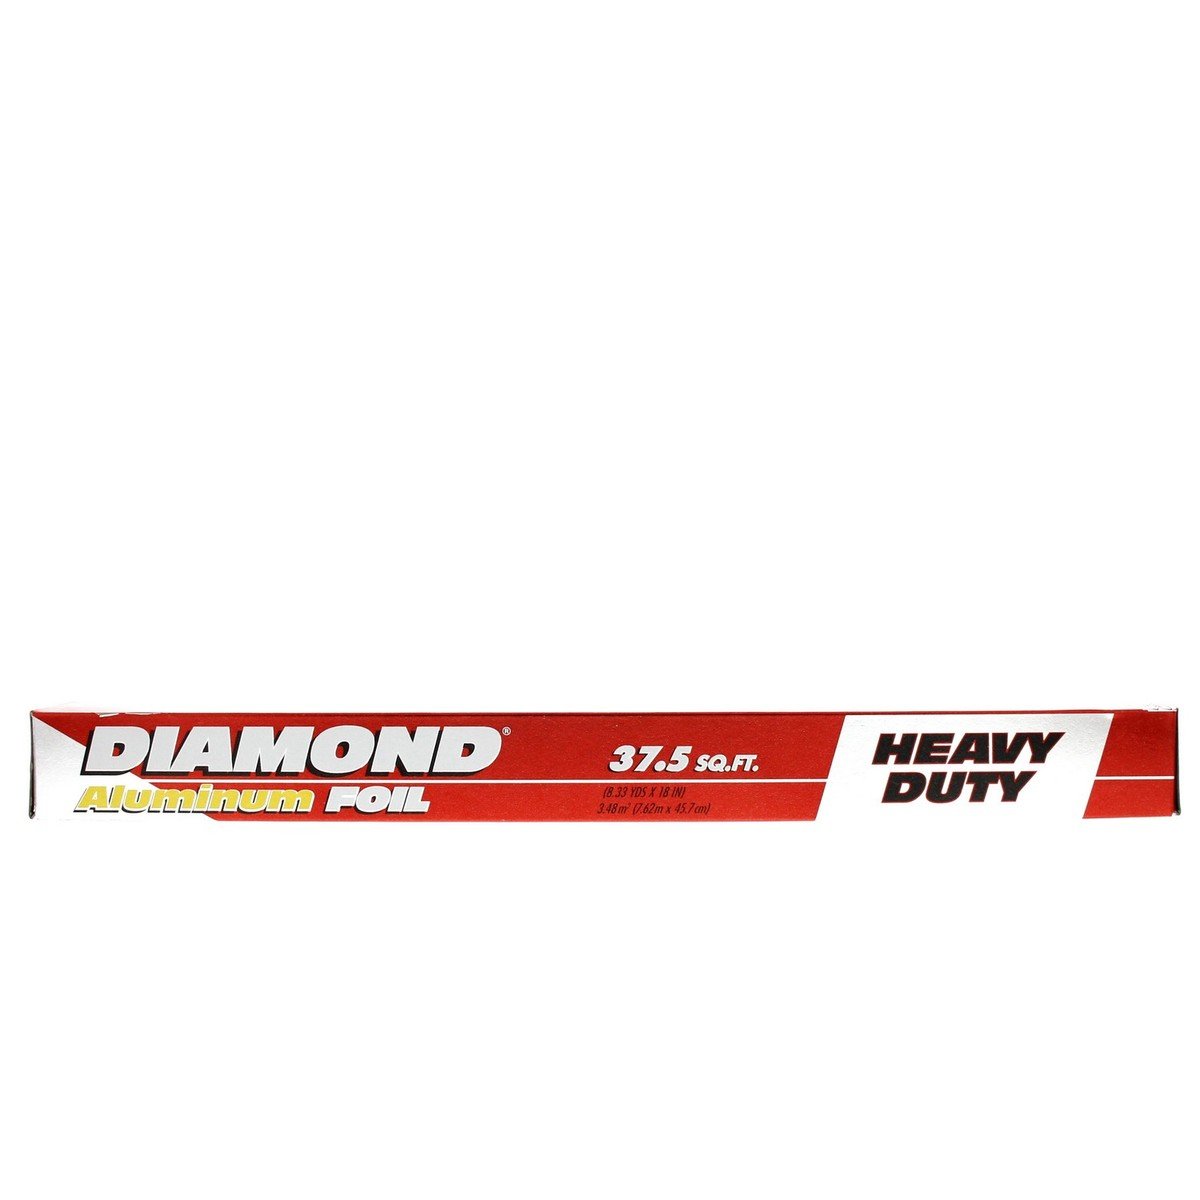 Diamond Heavy Duty Aluminum Foil Size 7.62m x 45.7cm 37.5sq.ft 1pc